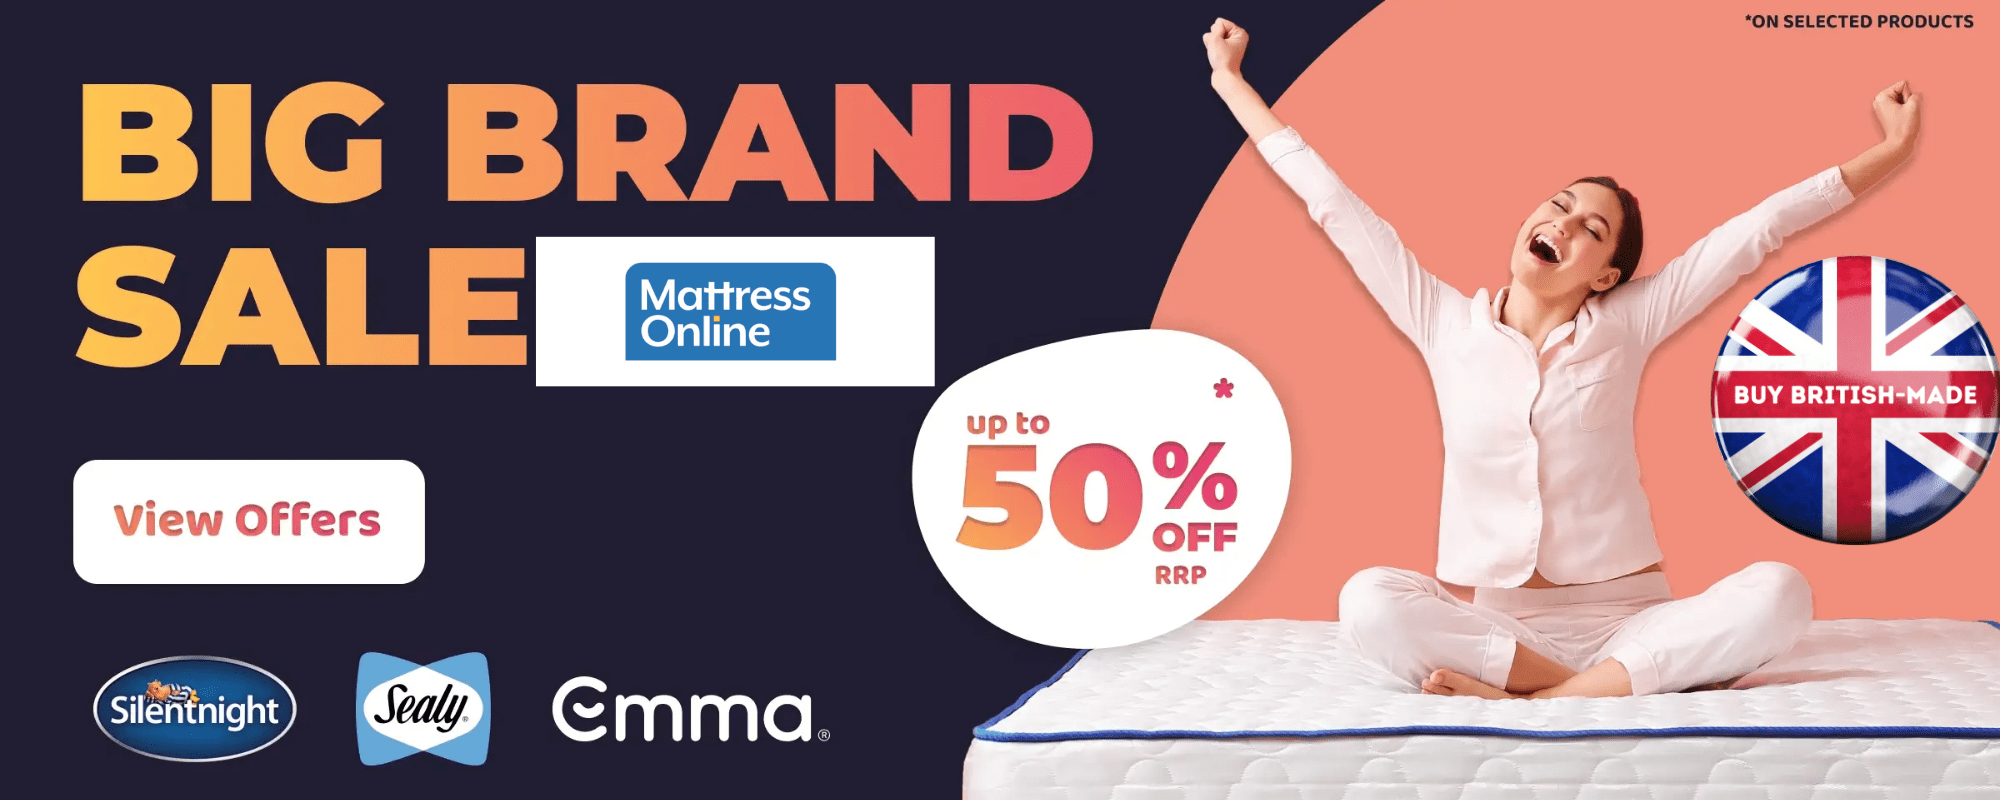 mattress online sale, british-made mattress brands